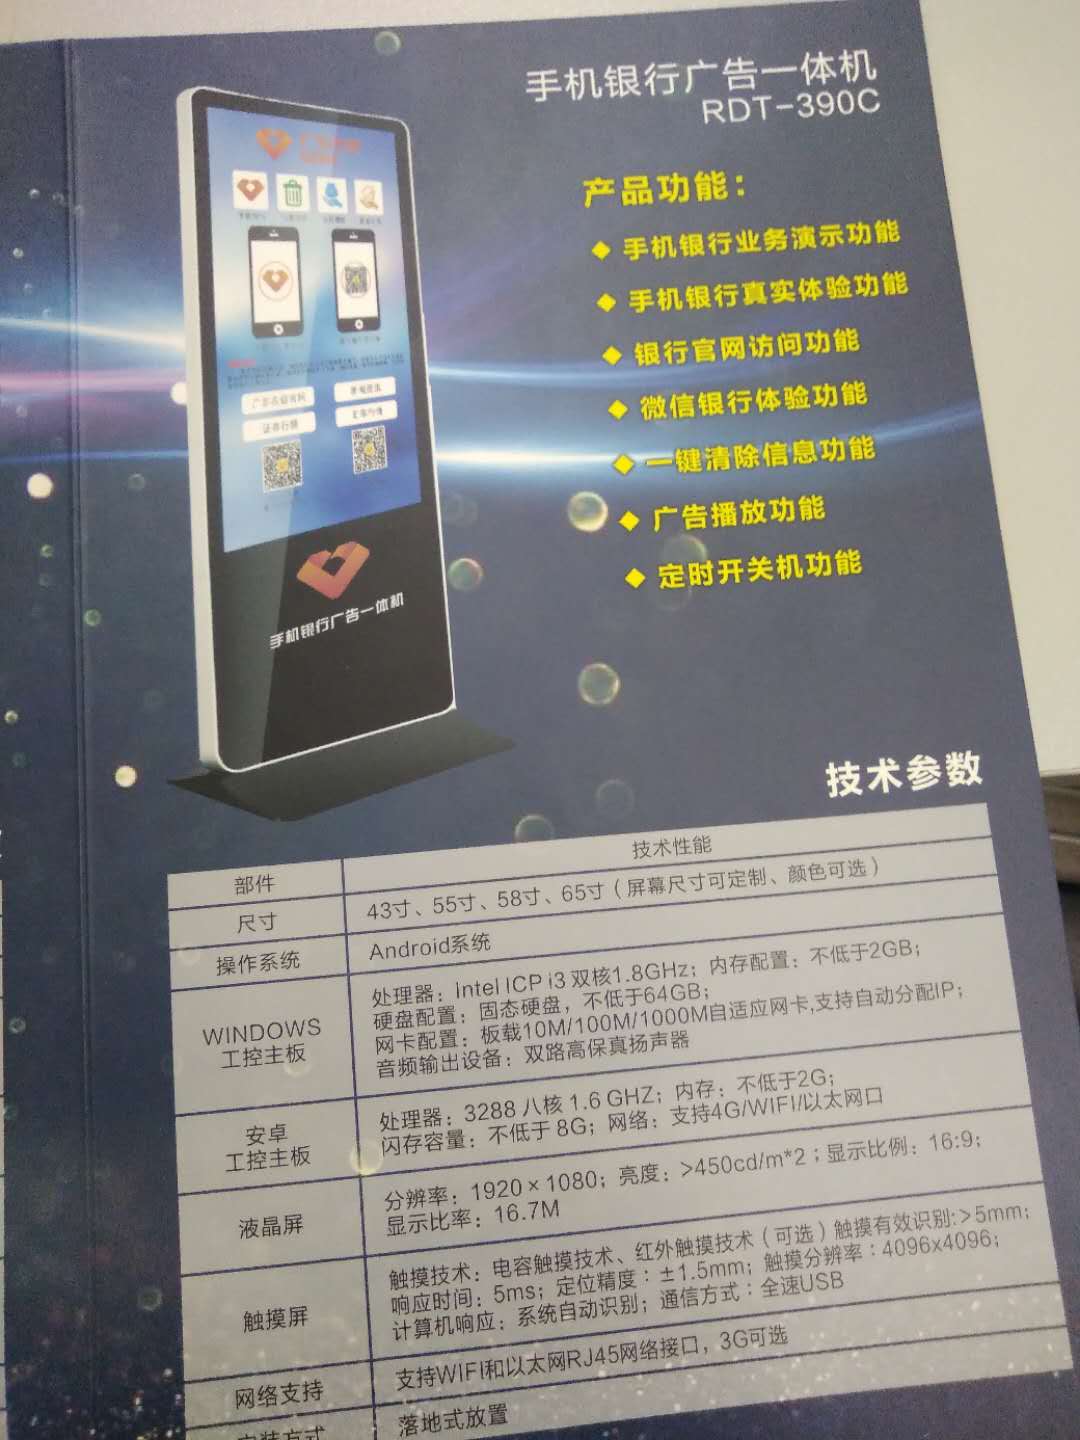 深圳融达通手机银行广告一体机RDT-390C